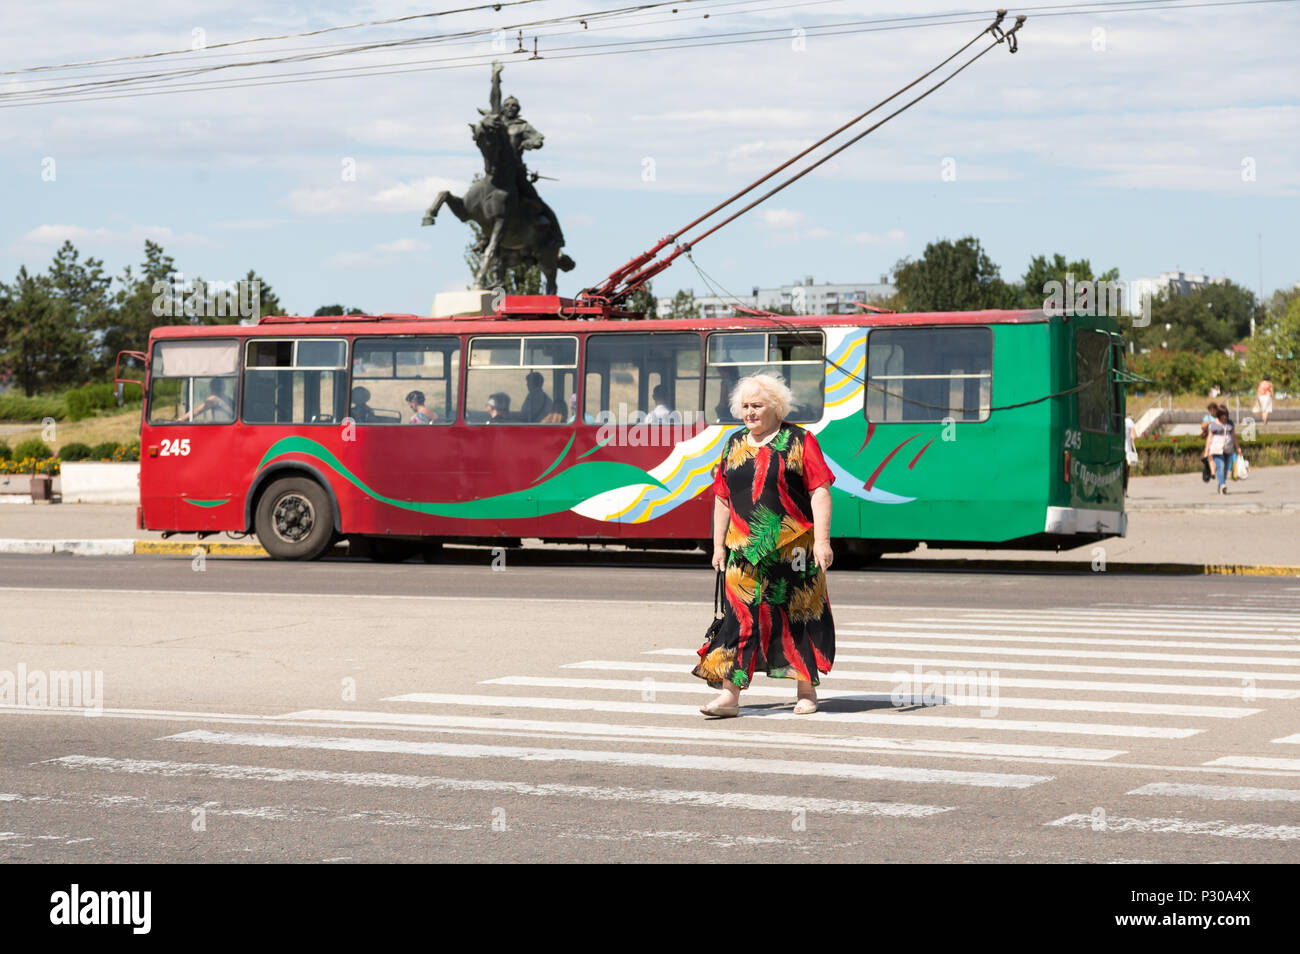 25.08.2016, Tiraspol, Transnistrien, Obus in der transnistrischen Region der Republik Moldau - Farben, ältere Dame in farblich passenden Kleid kreuze Zebras auf dem zentralen Mai Stockfoto